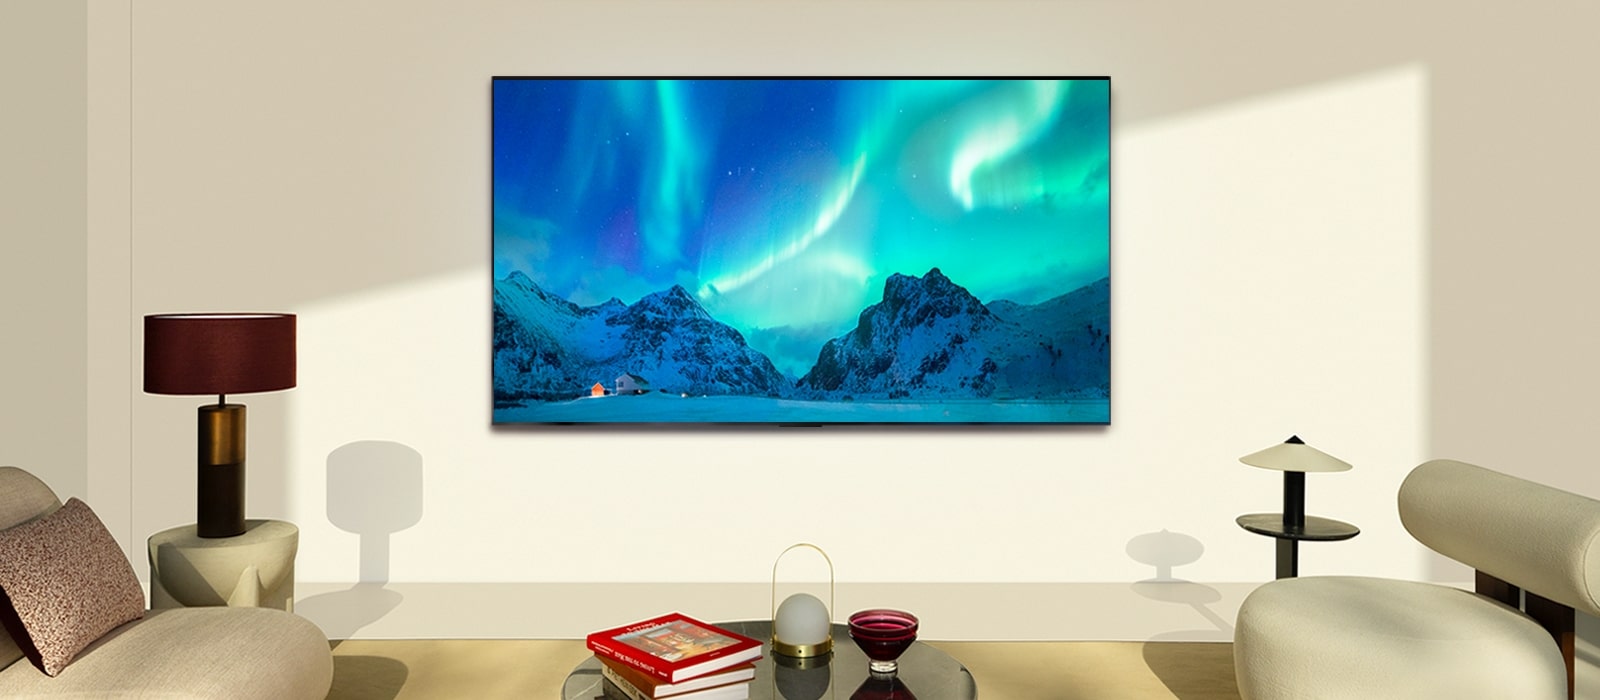 Ein LG OLED TV in einem modernen Wohnraum bei Tag. Das Bild des Polarlichts wird auf dem Bildschirm mit der idealen Helligkeitsstufe angezeigt.	